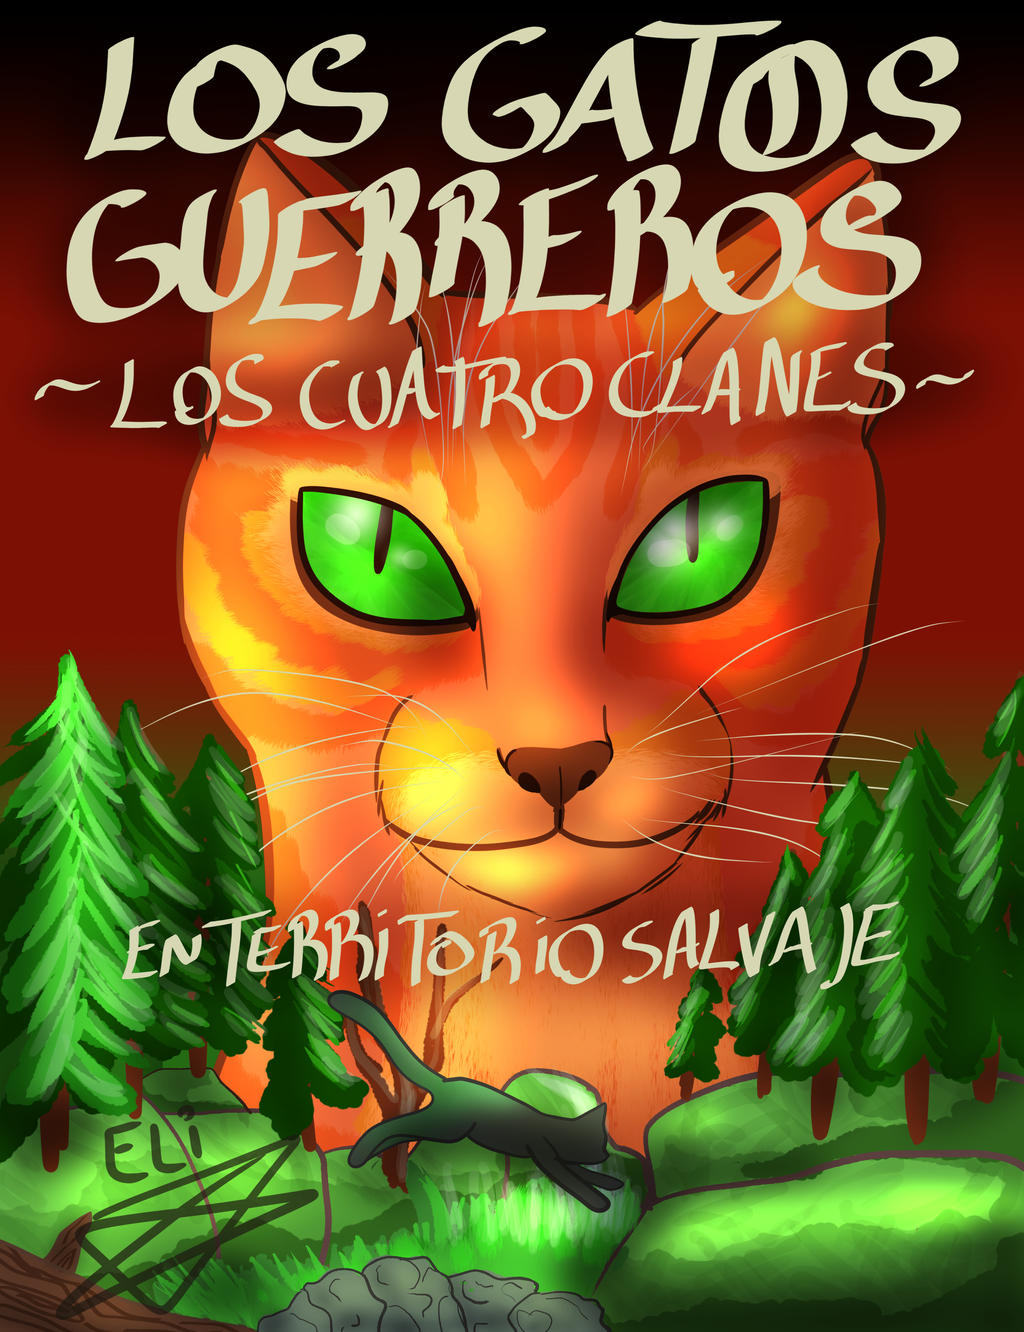 Ambigüedad Anécdota milagro En territorio salvaje - Los gatos guerreros by Raivis69love on DeviantArt